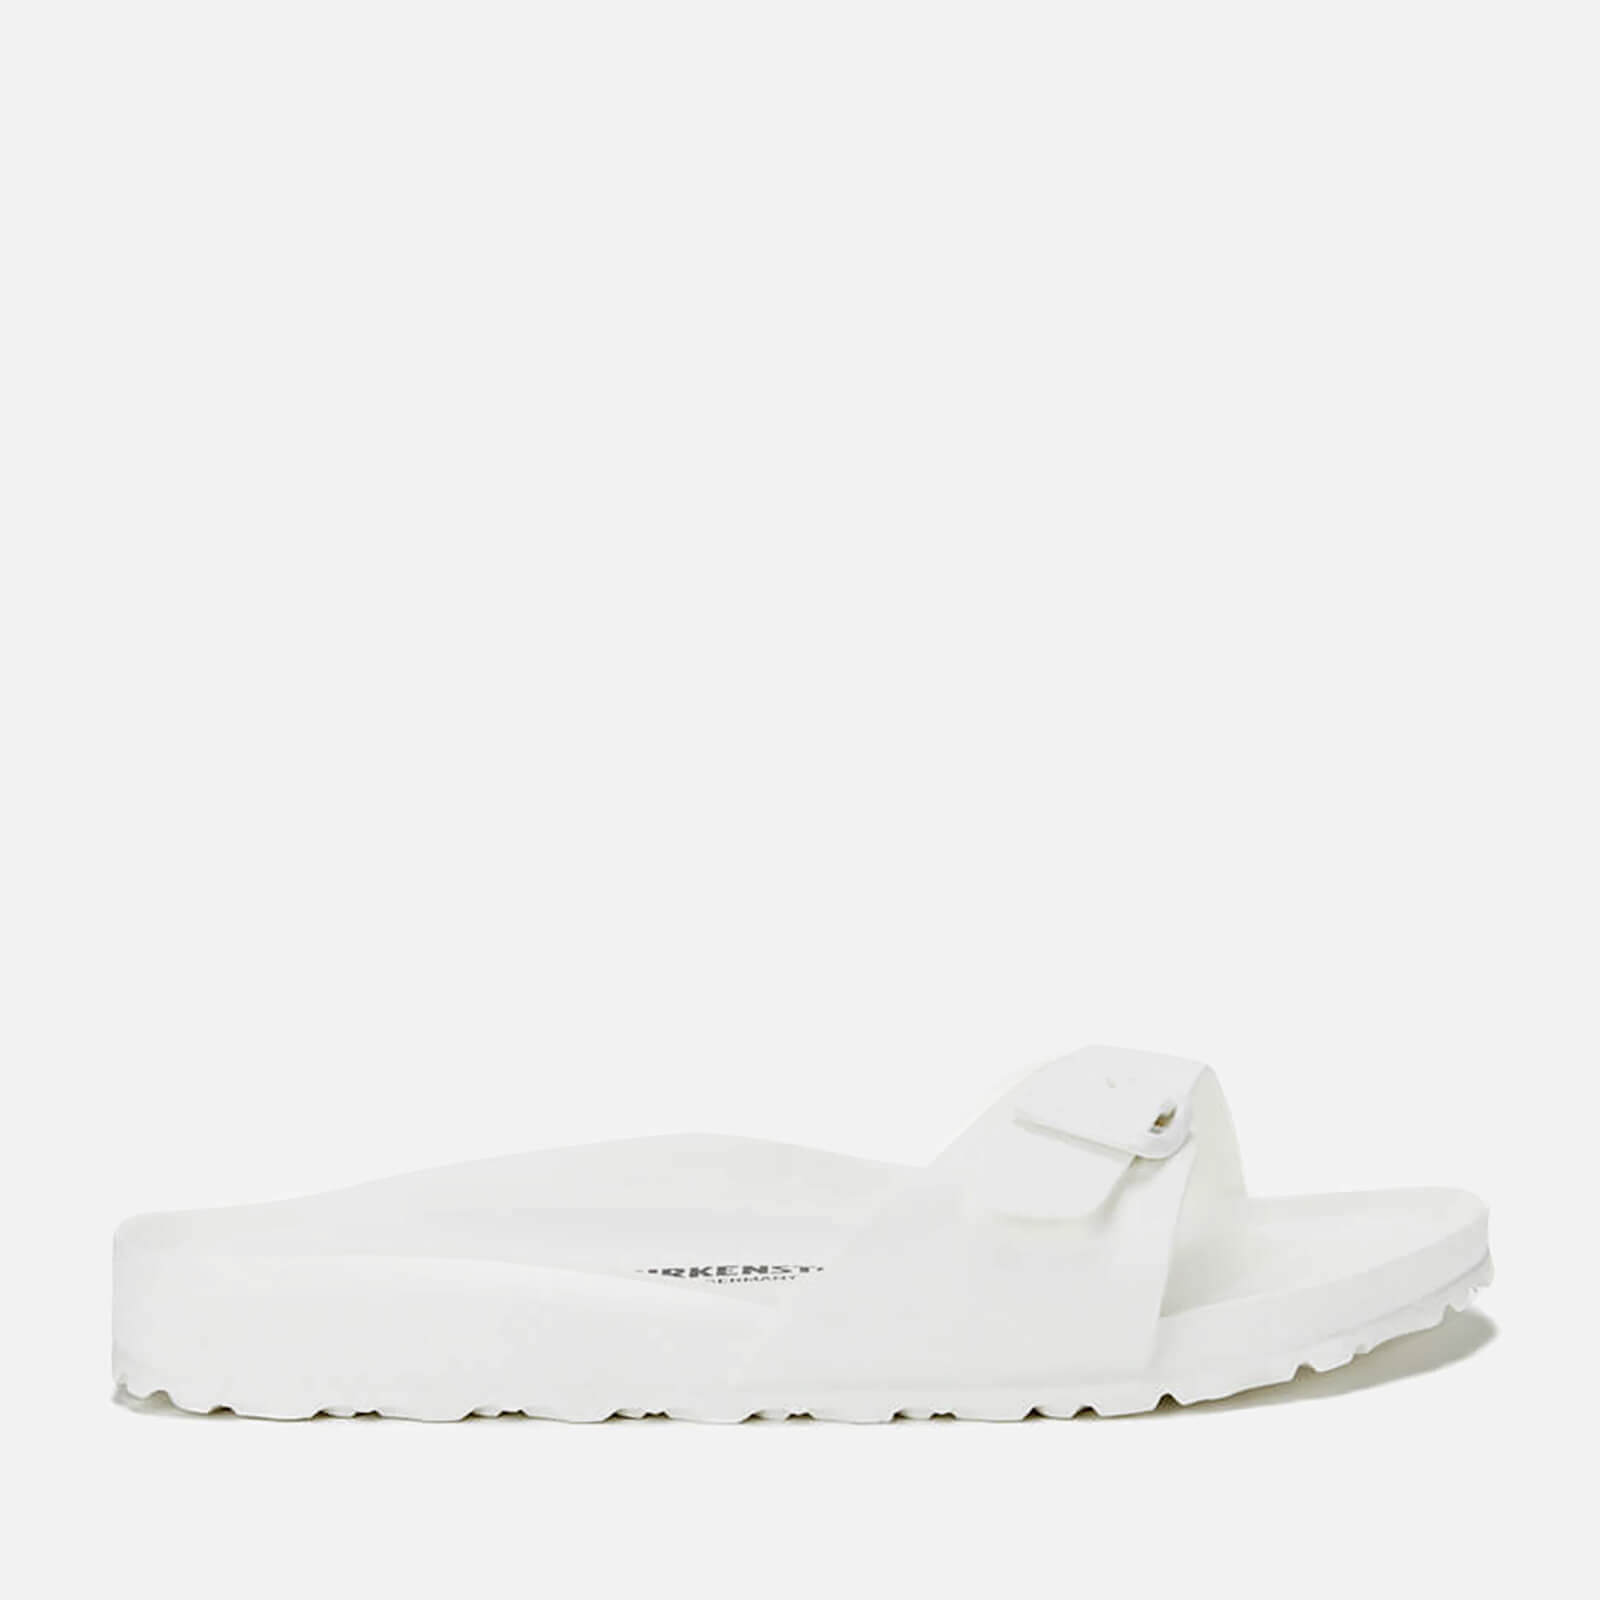 Madrid Eva Single Strap Sandals - White 